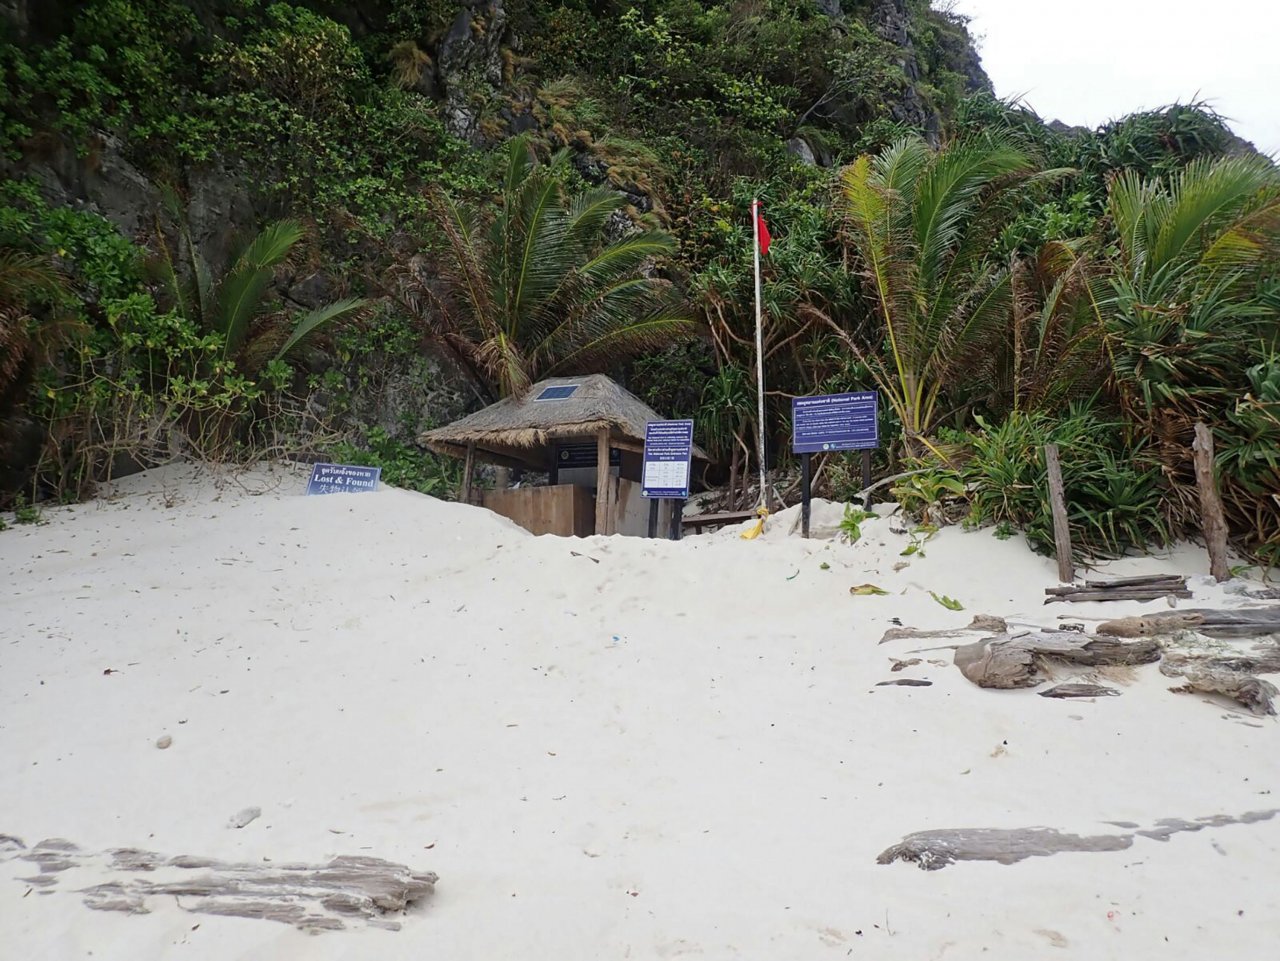 Krabi tourism operators appeal indefinite closure of Maya Bay